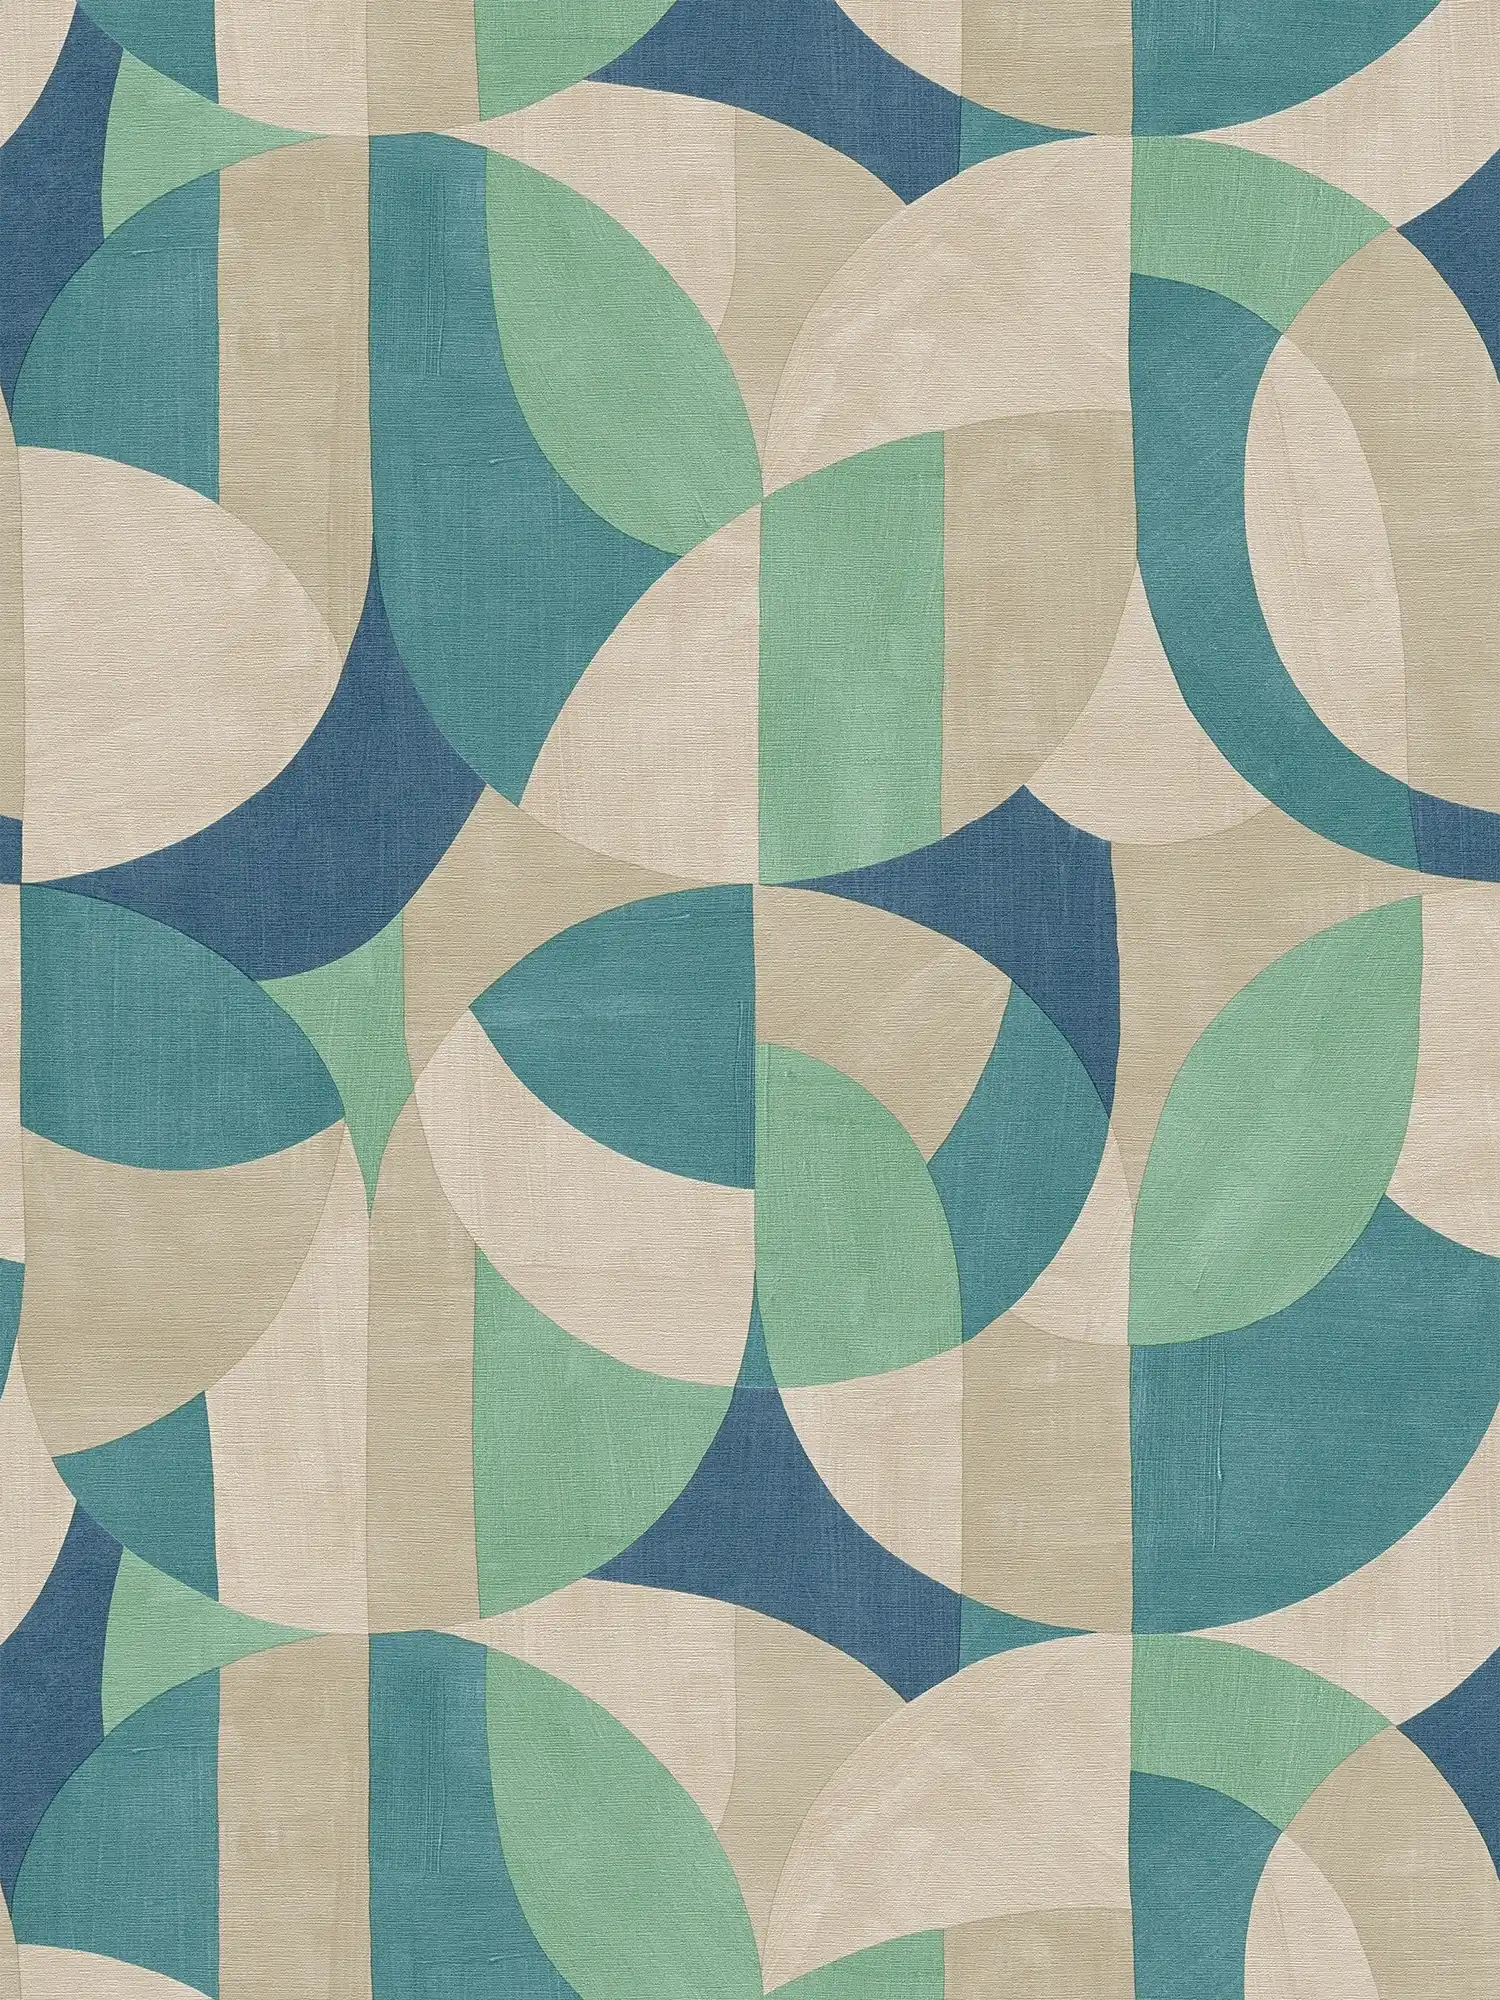         Grafische Vliestapete im Bauhaus-Design – Creme, Beige, Blau
    